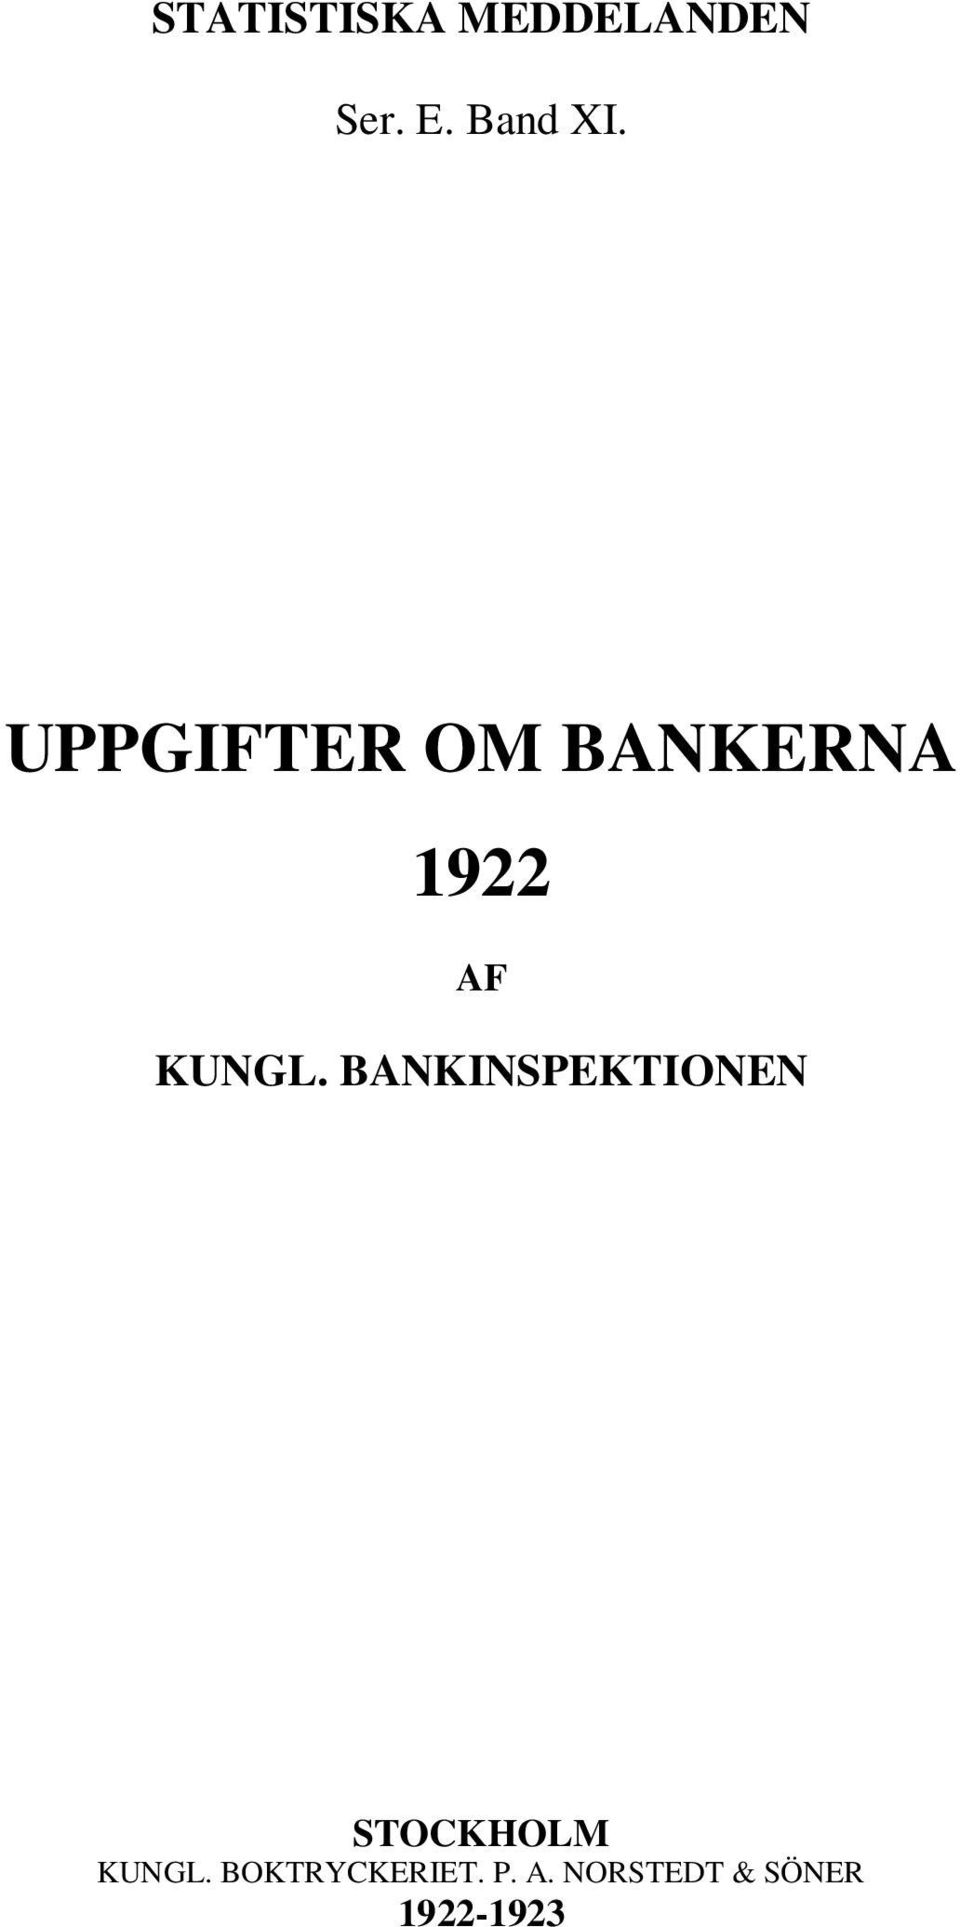 BANKINSPEKTIONEN STOCKHOLM KUNGL.